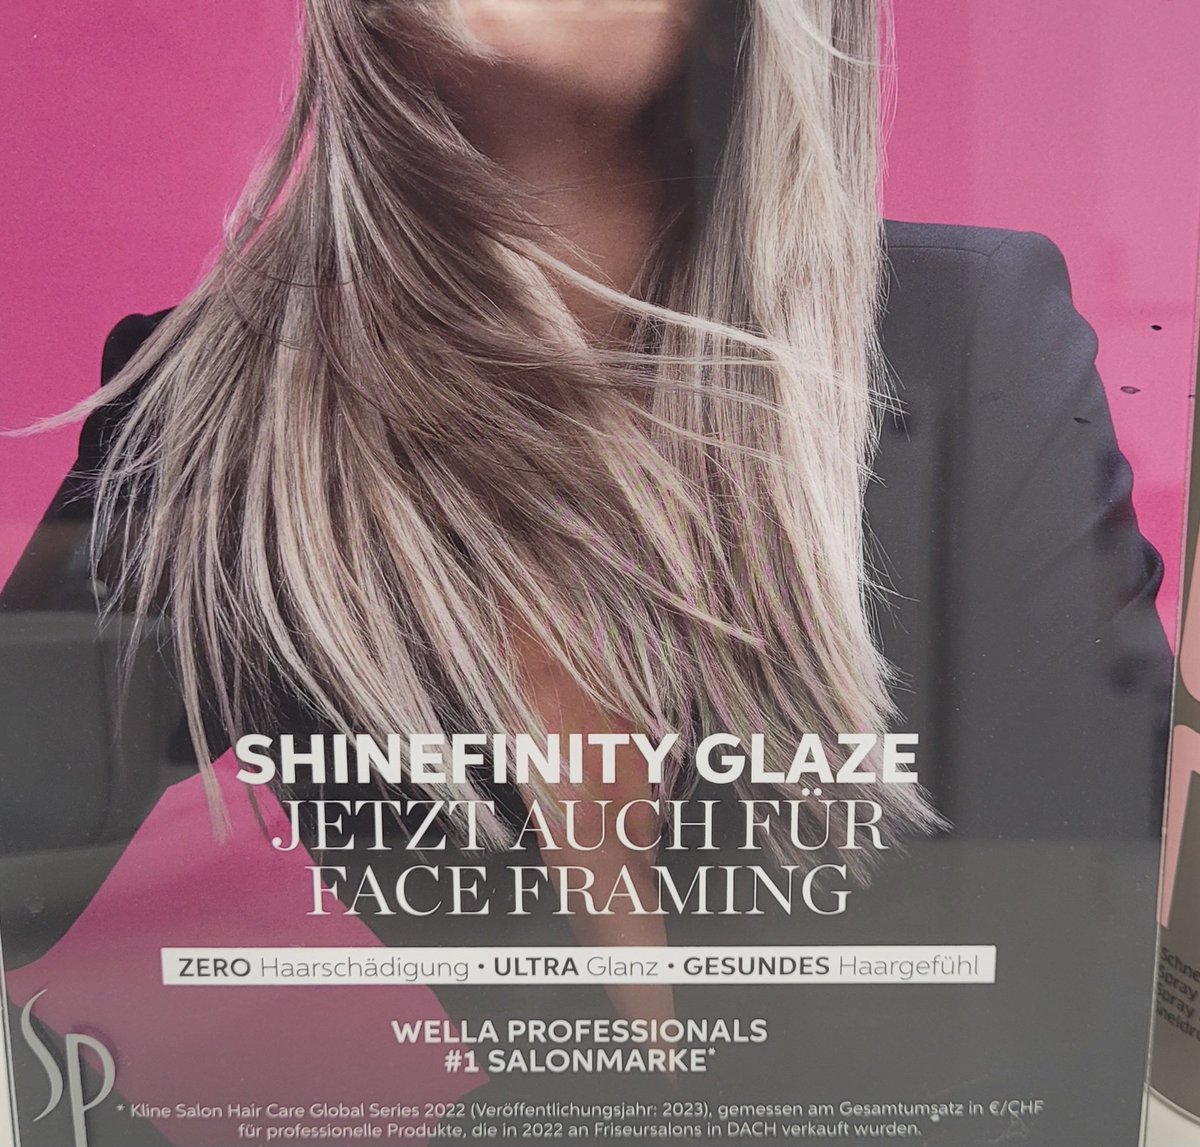 Jetzt muss ich schon beim Friseur googeln, was die Werbeplakate bedeuten... 😳
Sagt bloß, ihr wisst, was Face Framing bedeutet?